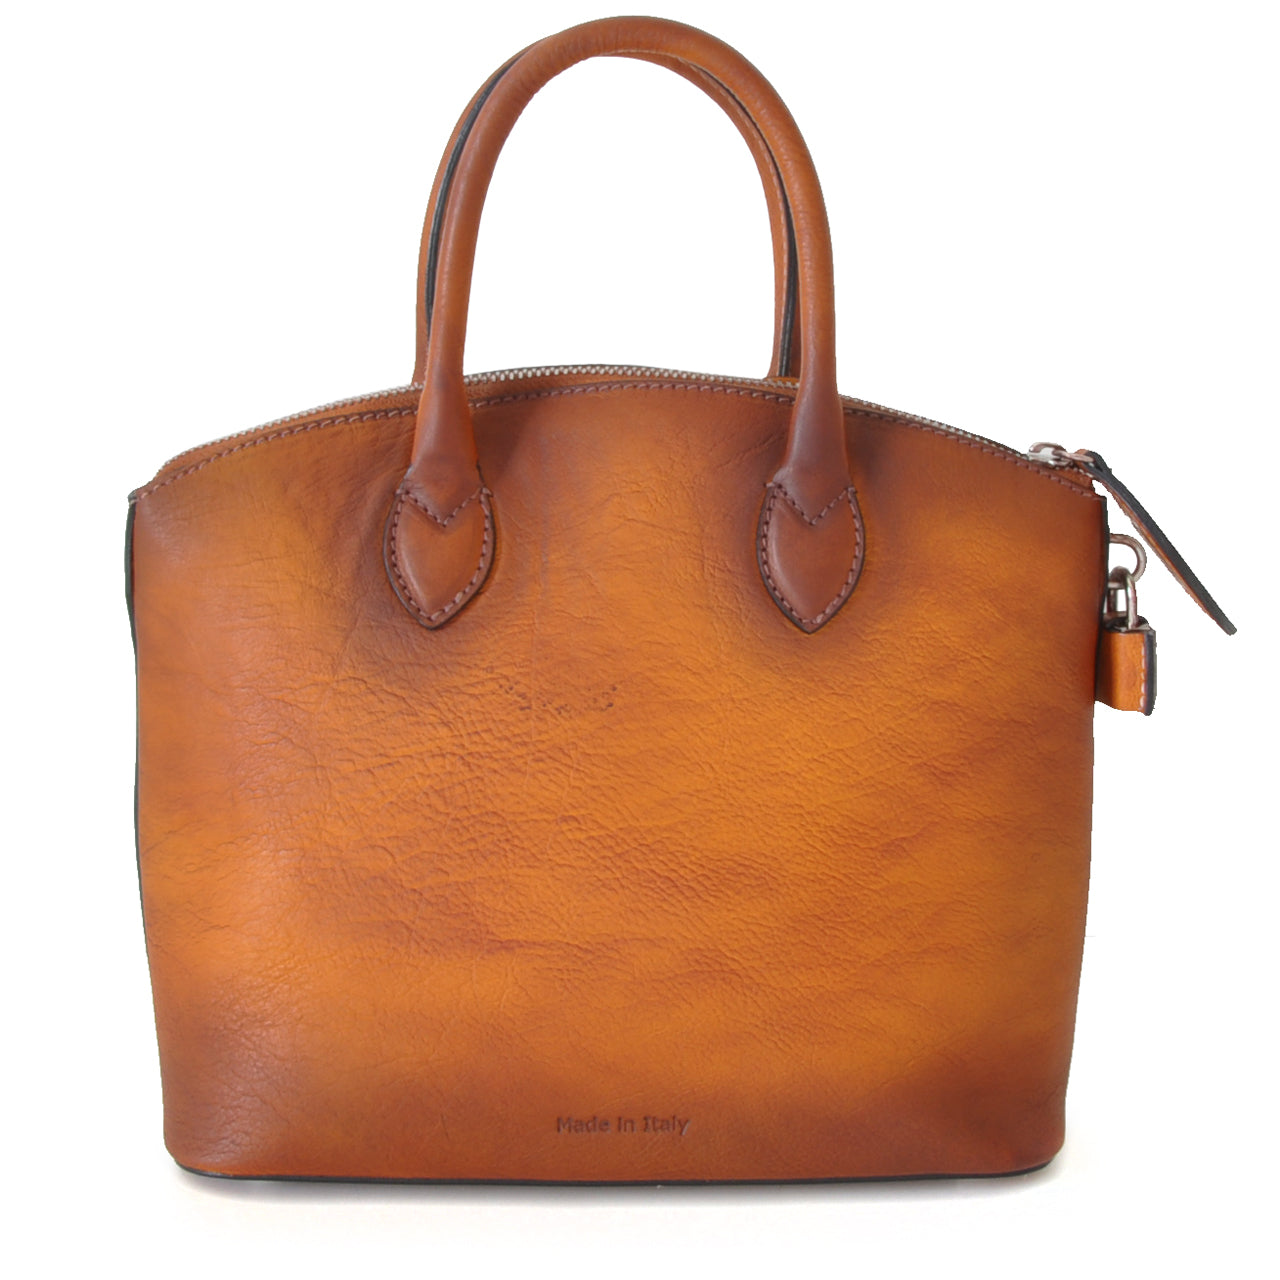 Pratesi Versilia Small Bruce Handbag in genuine Italian leather - Vegetable Tanned Italian Leather Violet